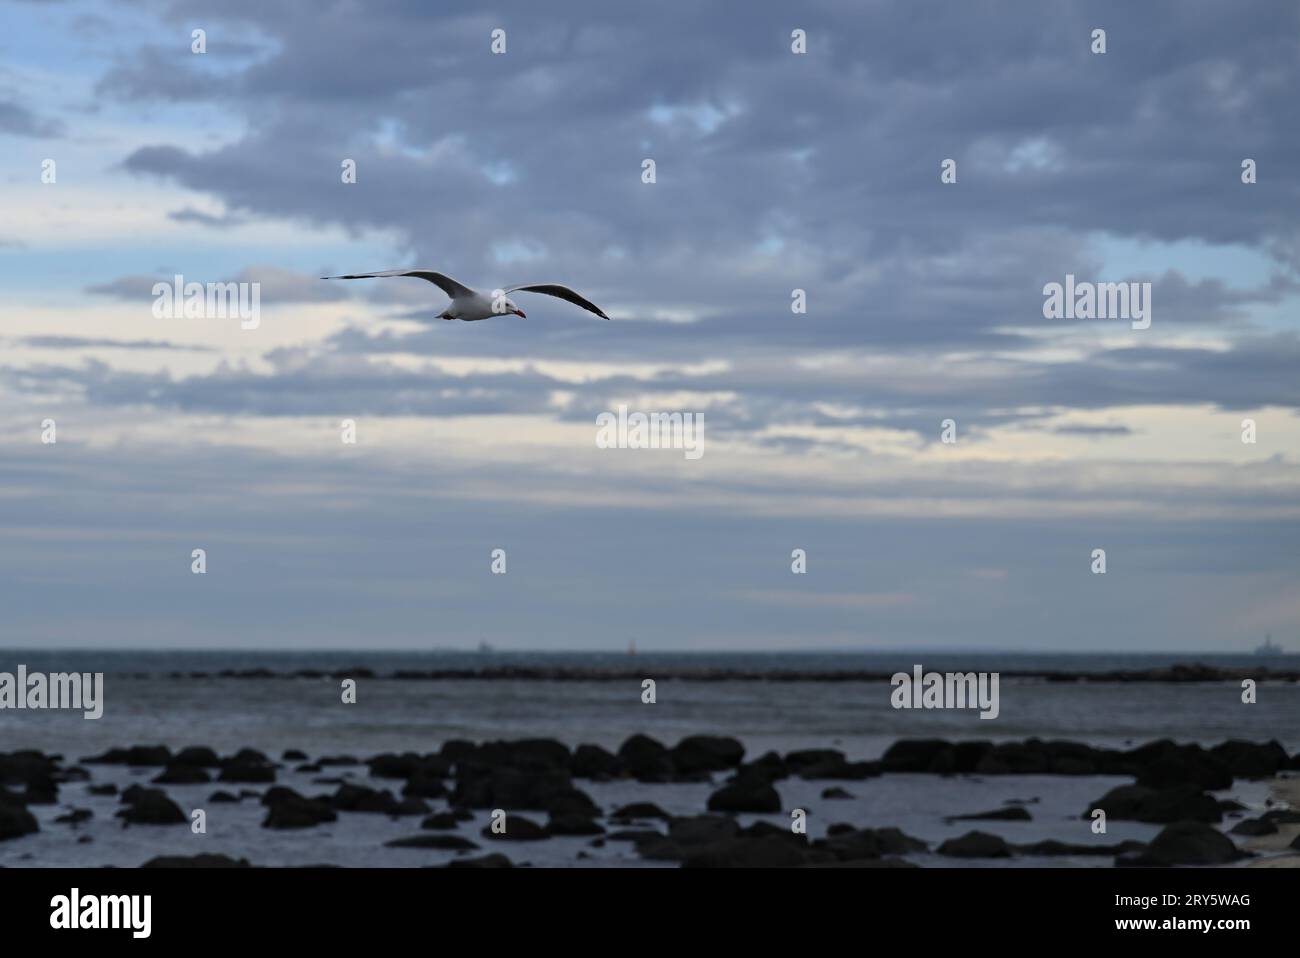 Mouette, ou mouette argentée, en vol au-dessus des rochers dans l'eau peu profonde par une plage, lors d'une journée grise et nuageuse Banque D'Images